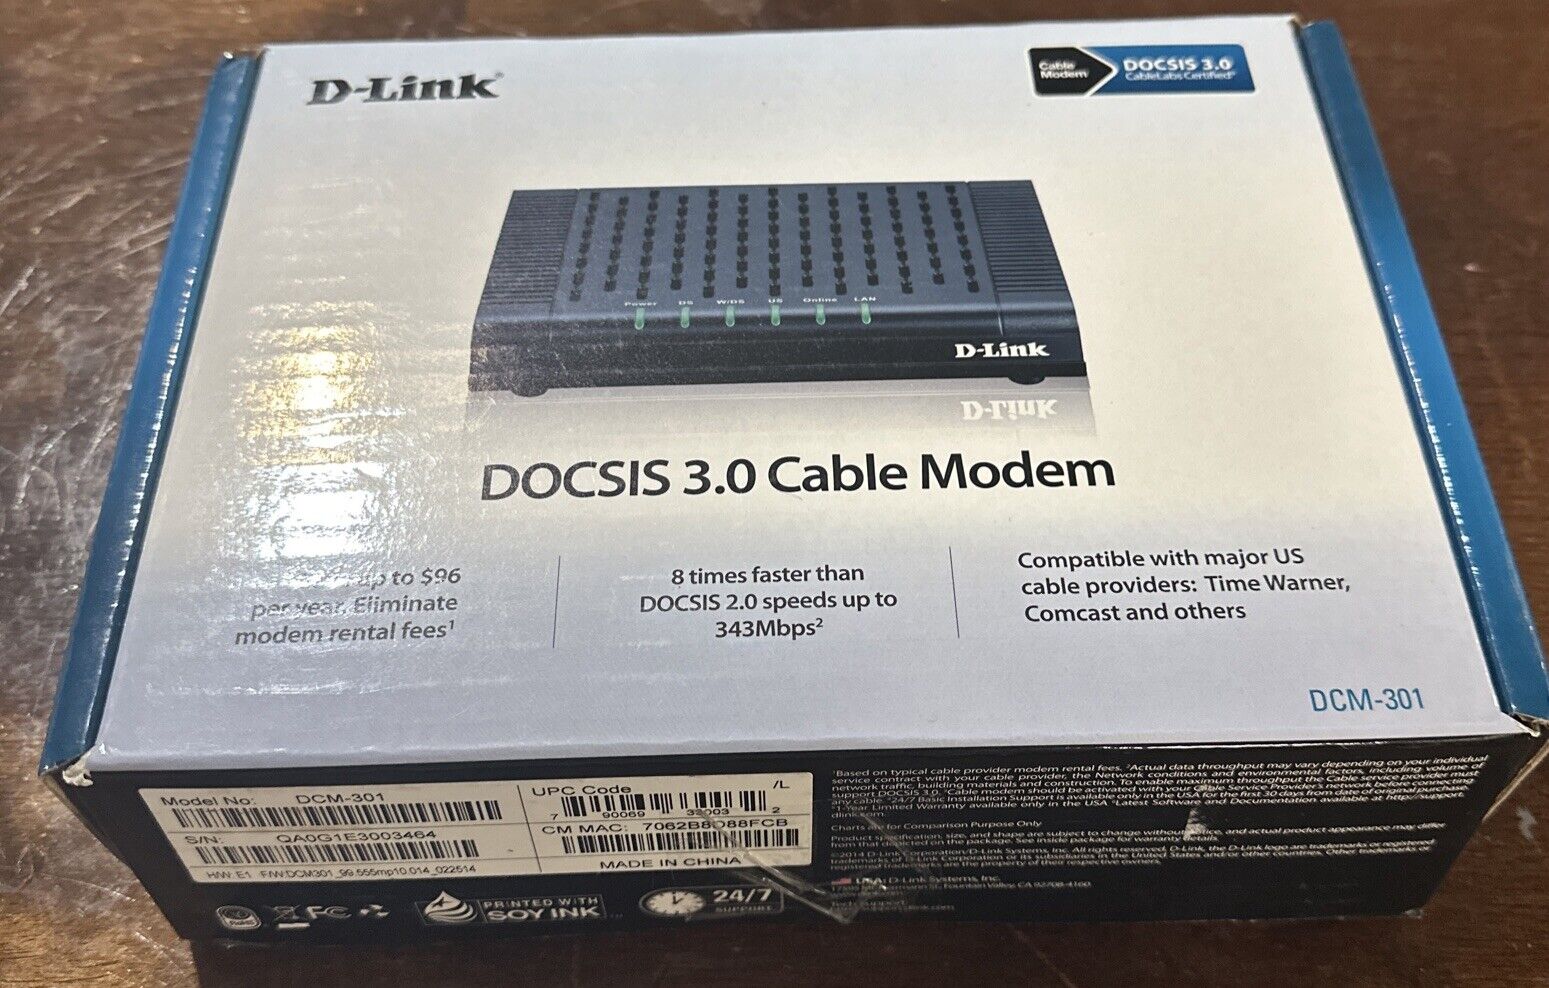 D-Link DOCSIS 3.0 Cable Modem DCM-301 PRE-OWNED Cox Comcast Xfinity Charter etc